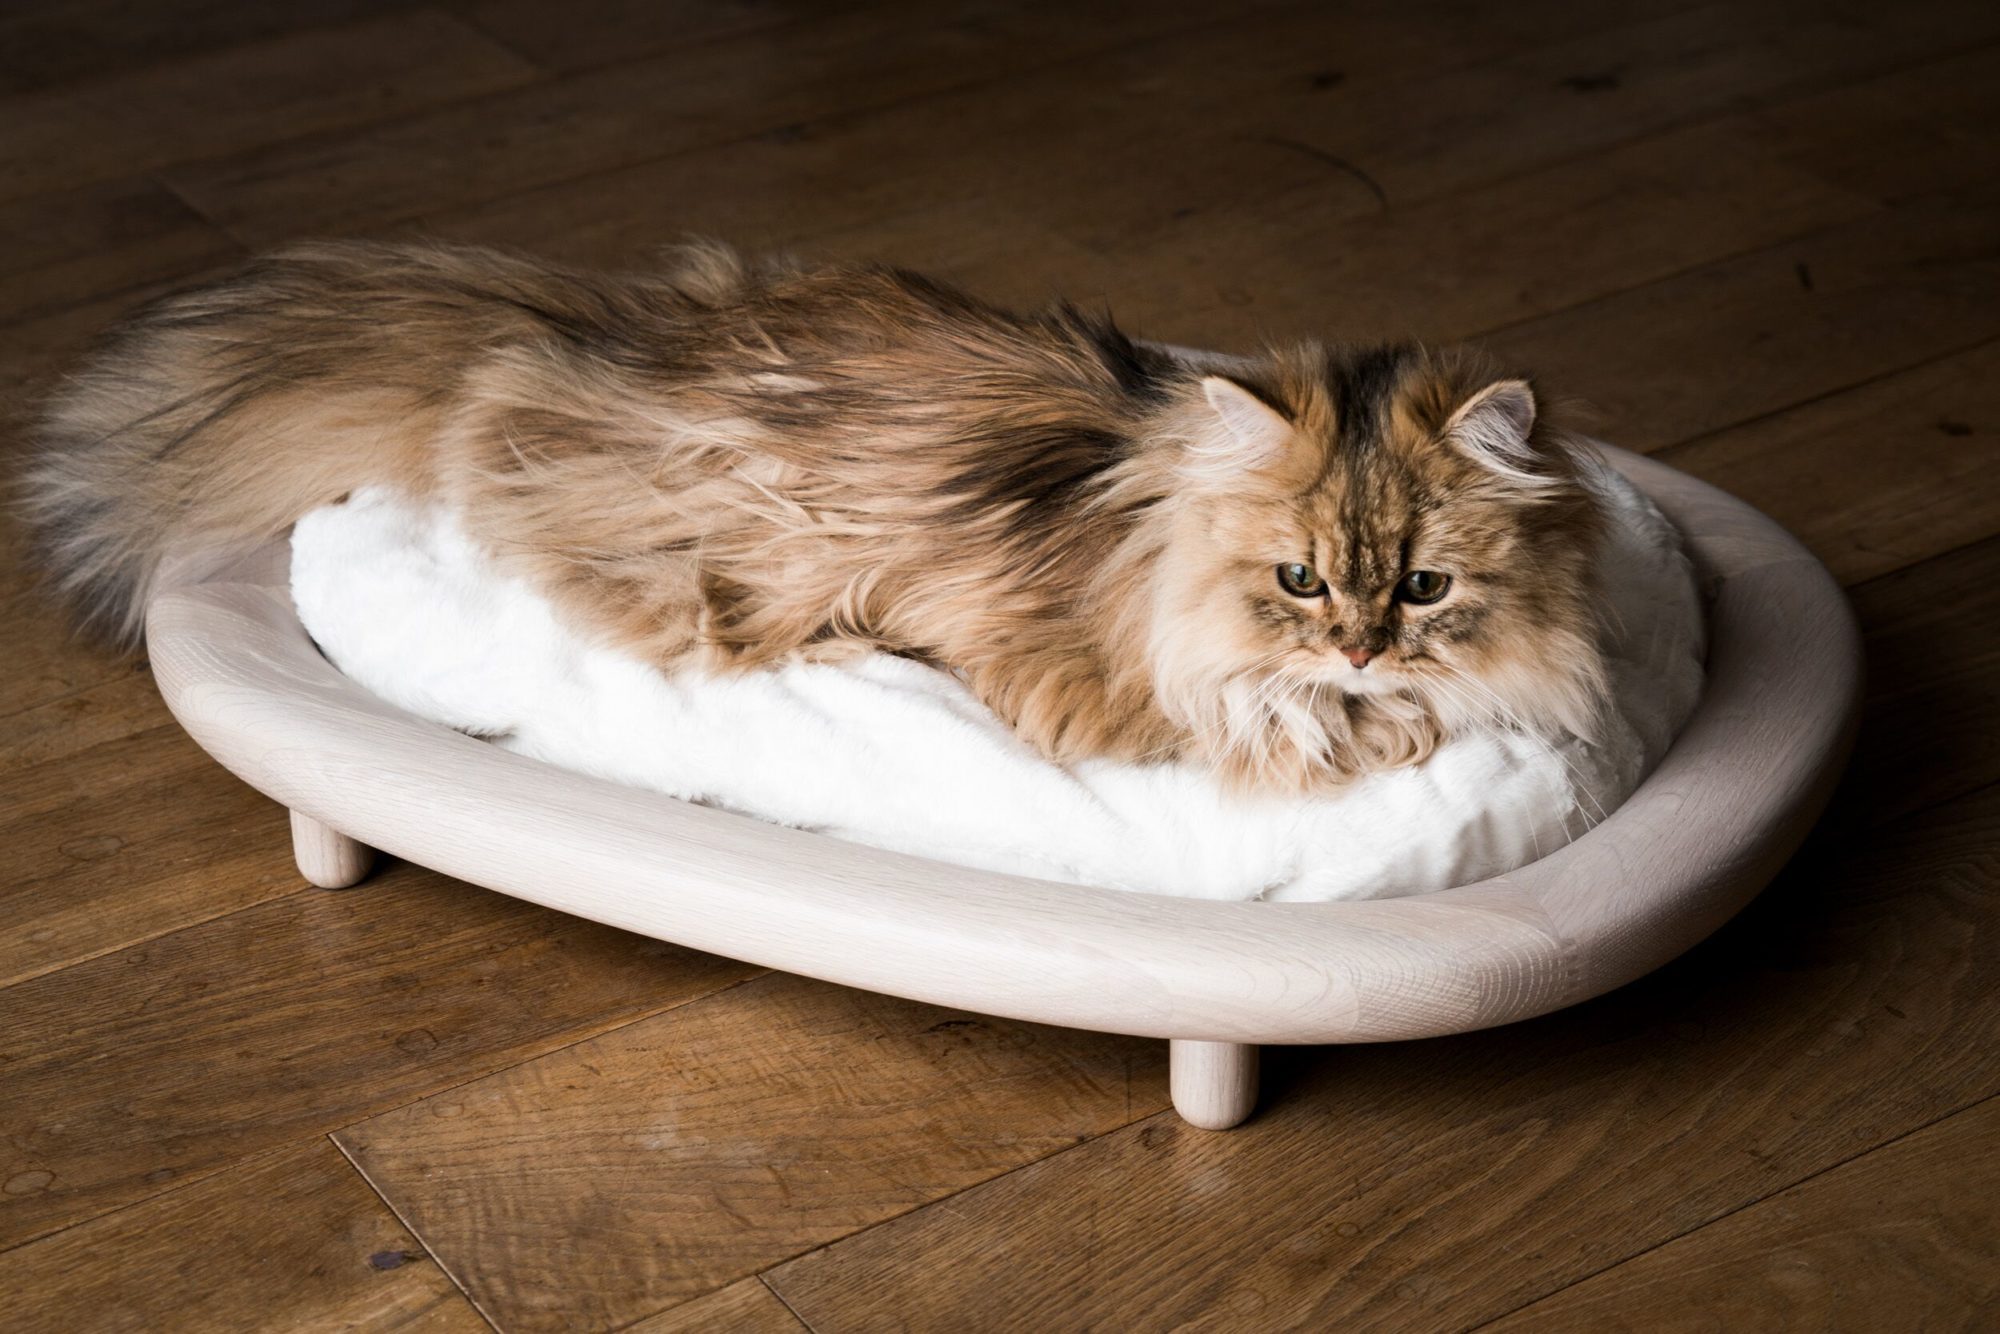 気韻漂うカリモク謹製猫ベッド、画趣満ち満ちたる猫写真に